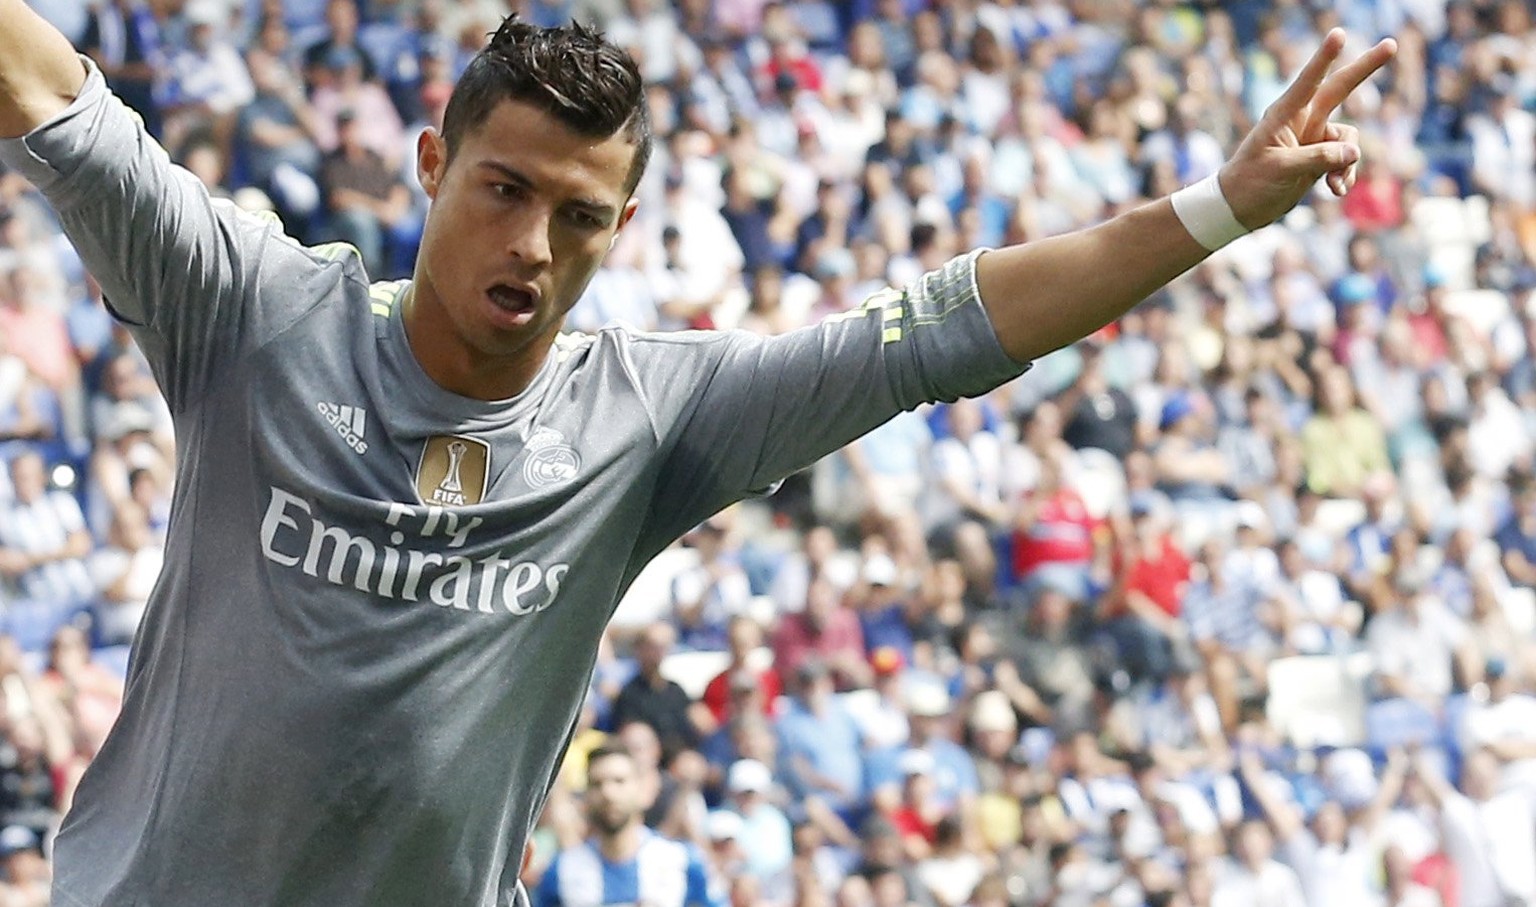 Cristiano Ronaldo ballerte sich am Wochenende fit für die Champions League. Gegen&nbsp;Espanyol Barcelona traf er gleich fünf Mal.&nbsp;